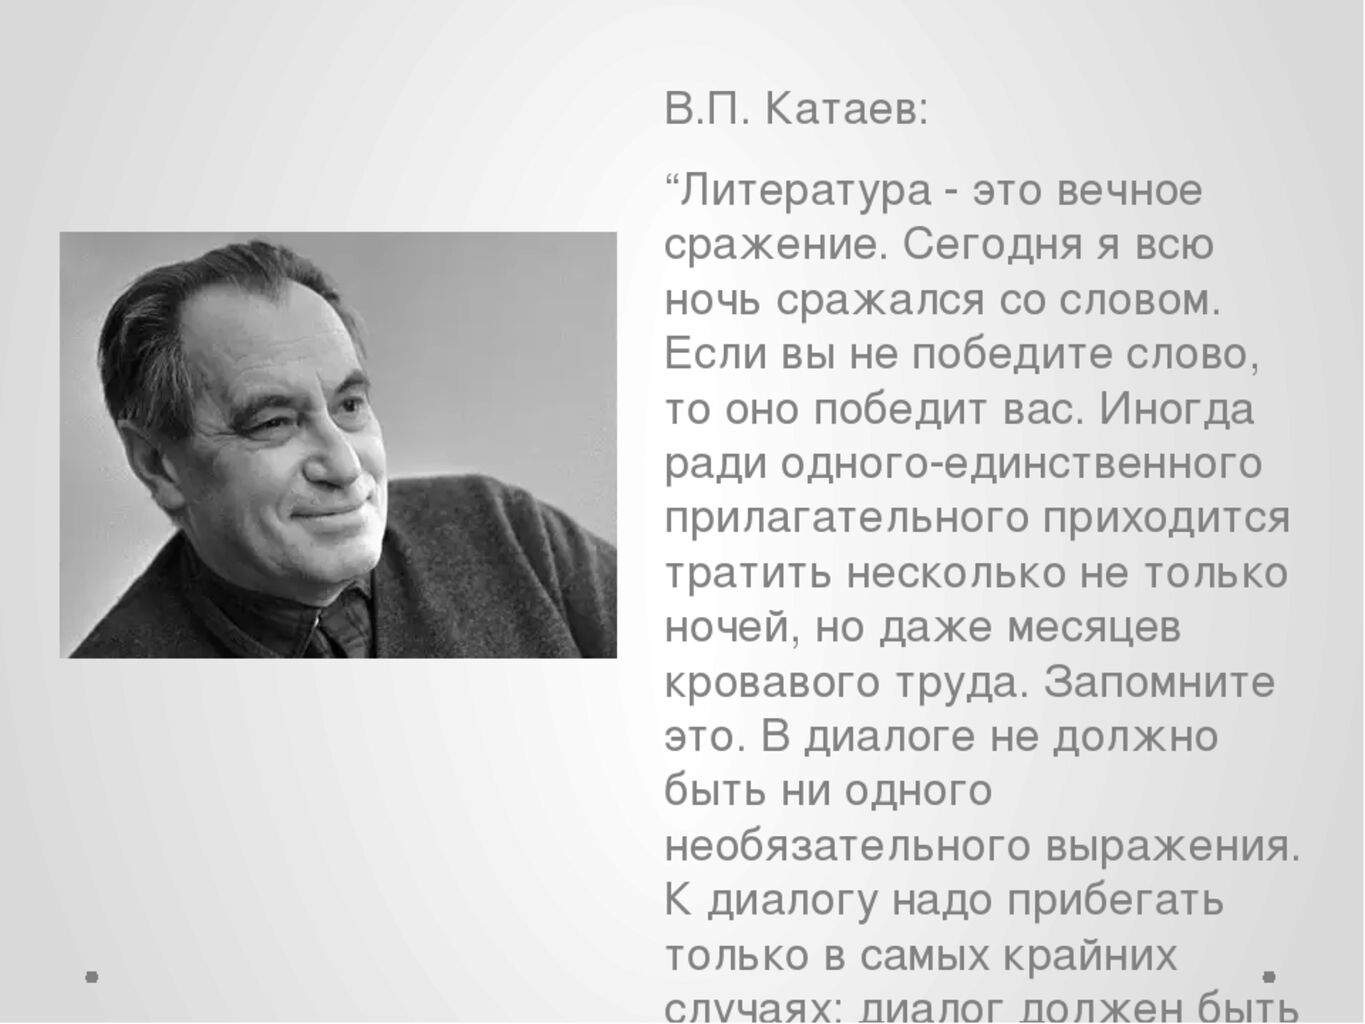 Жизнь и творчество в Катаева